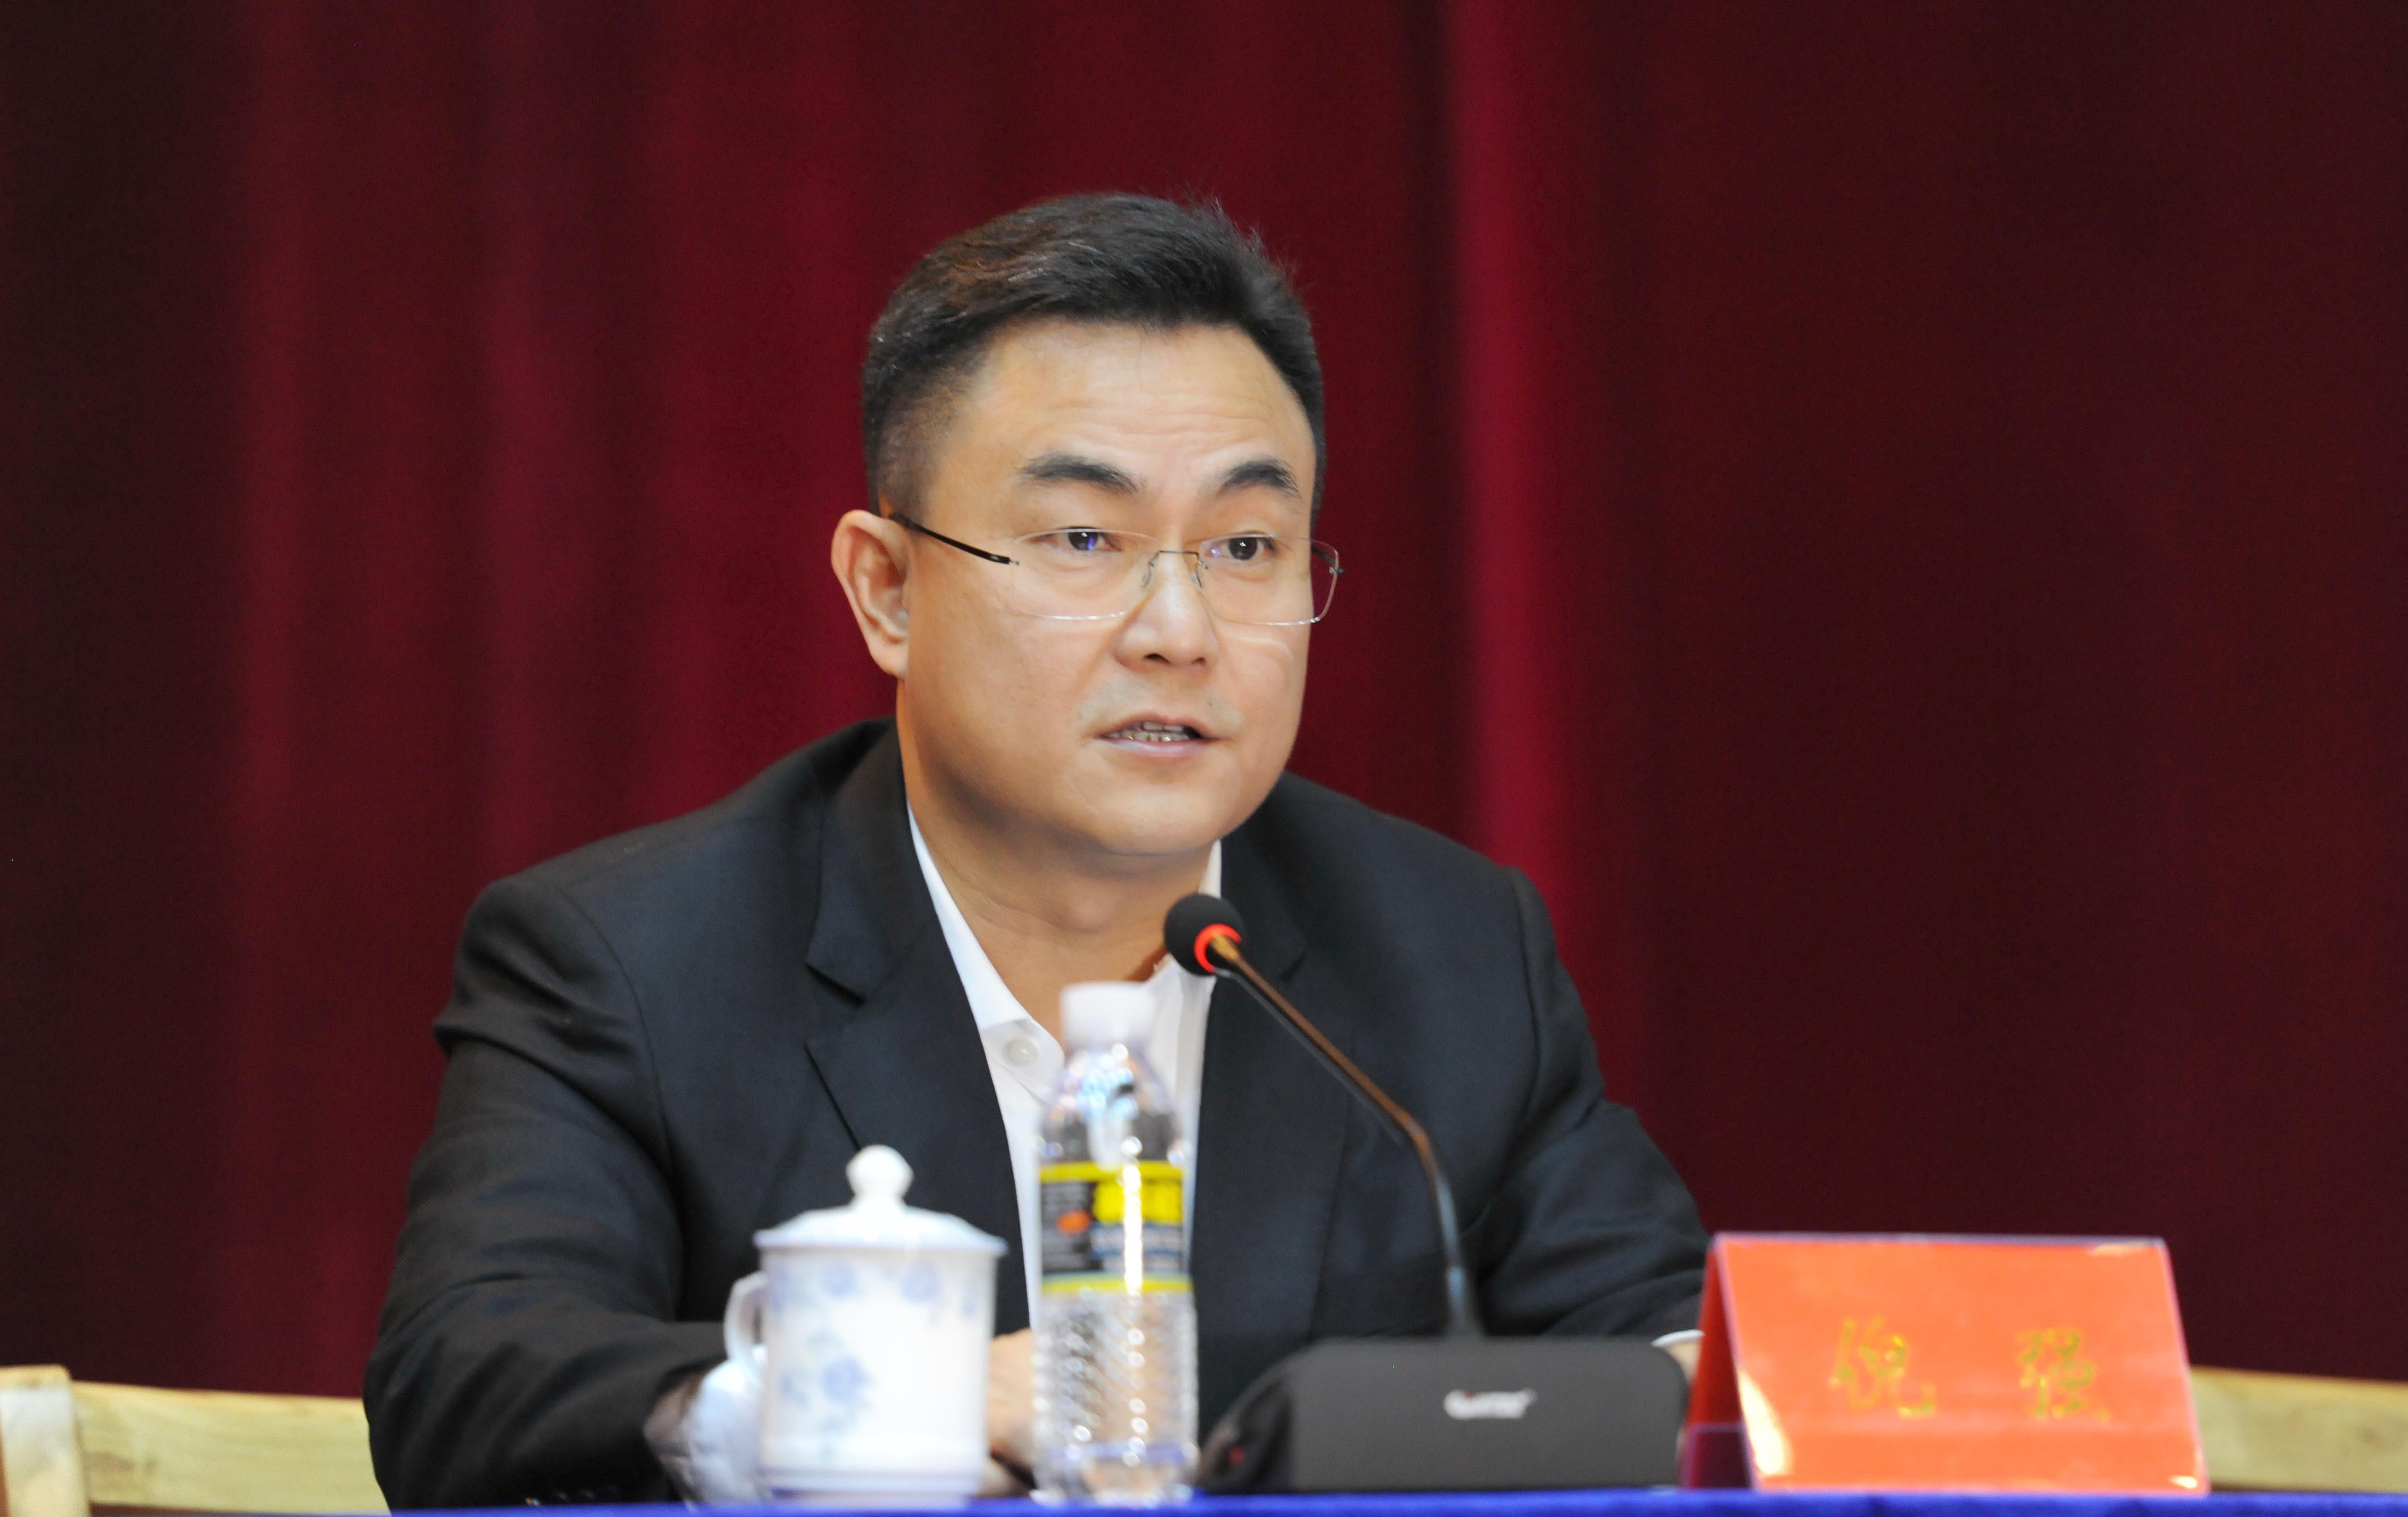 常务委员会第二十七次会议通过决定任命:倪强为海南省人民政府副省长